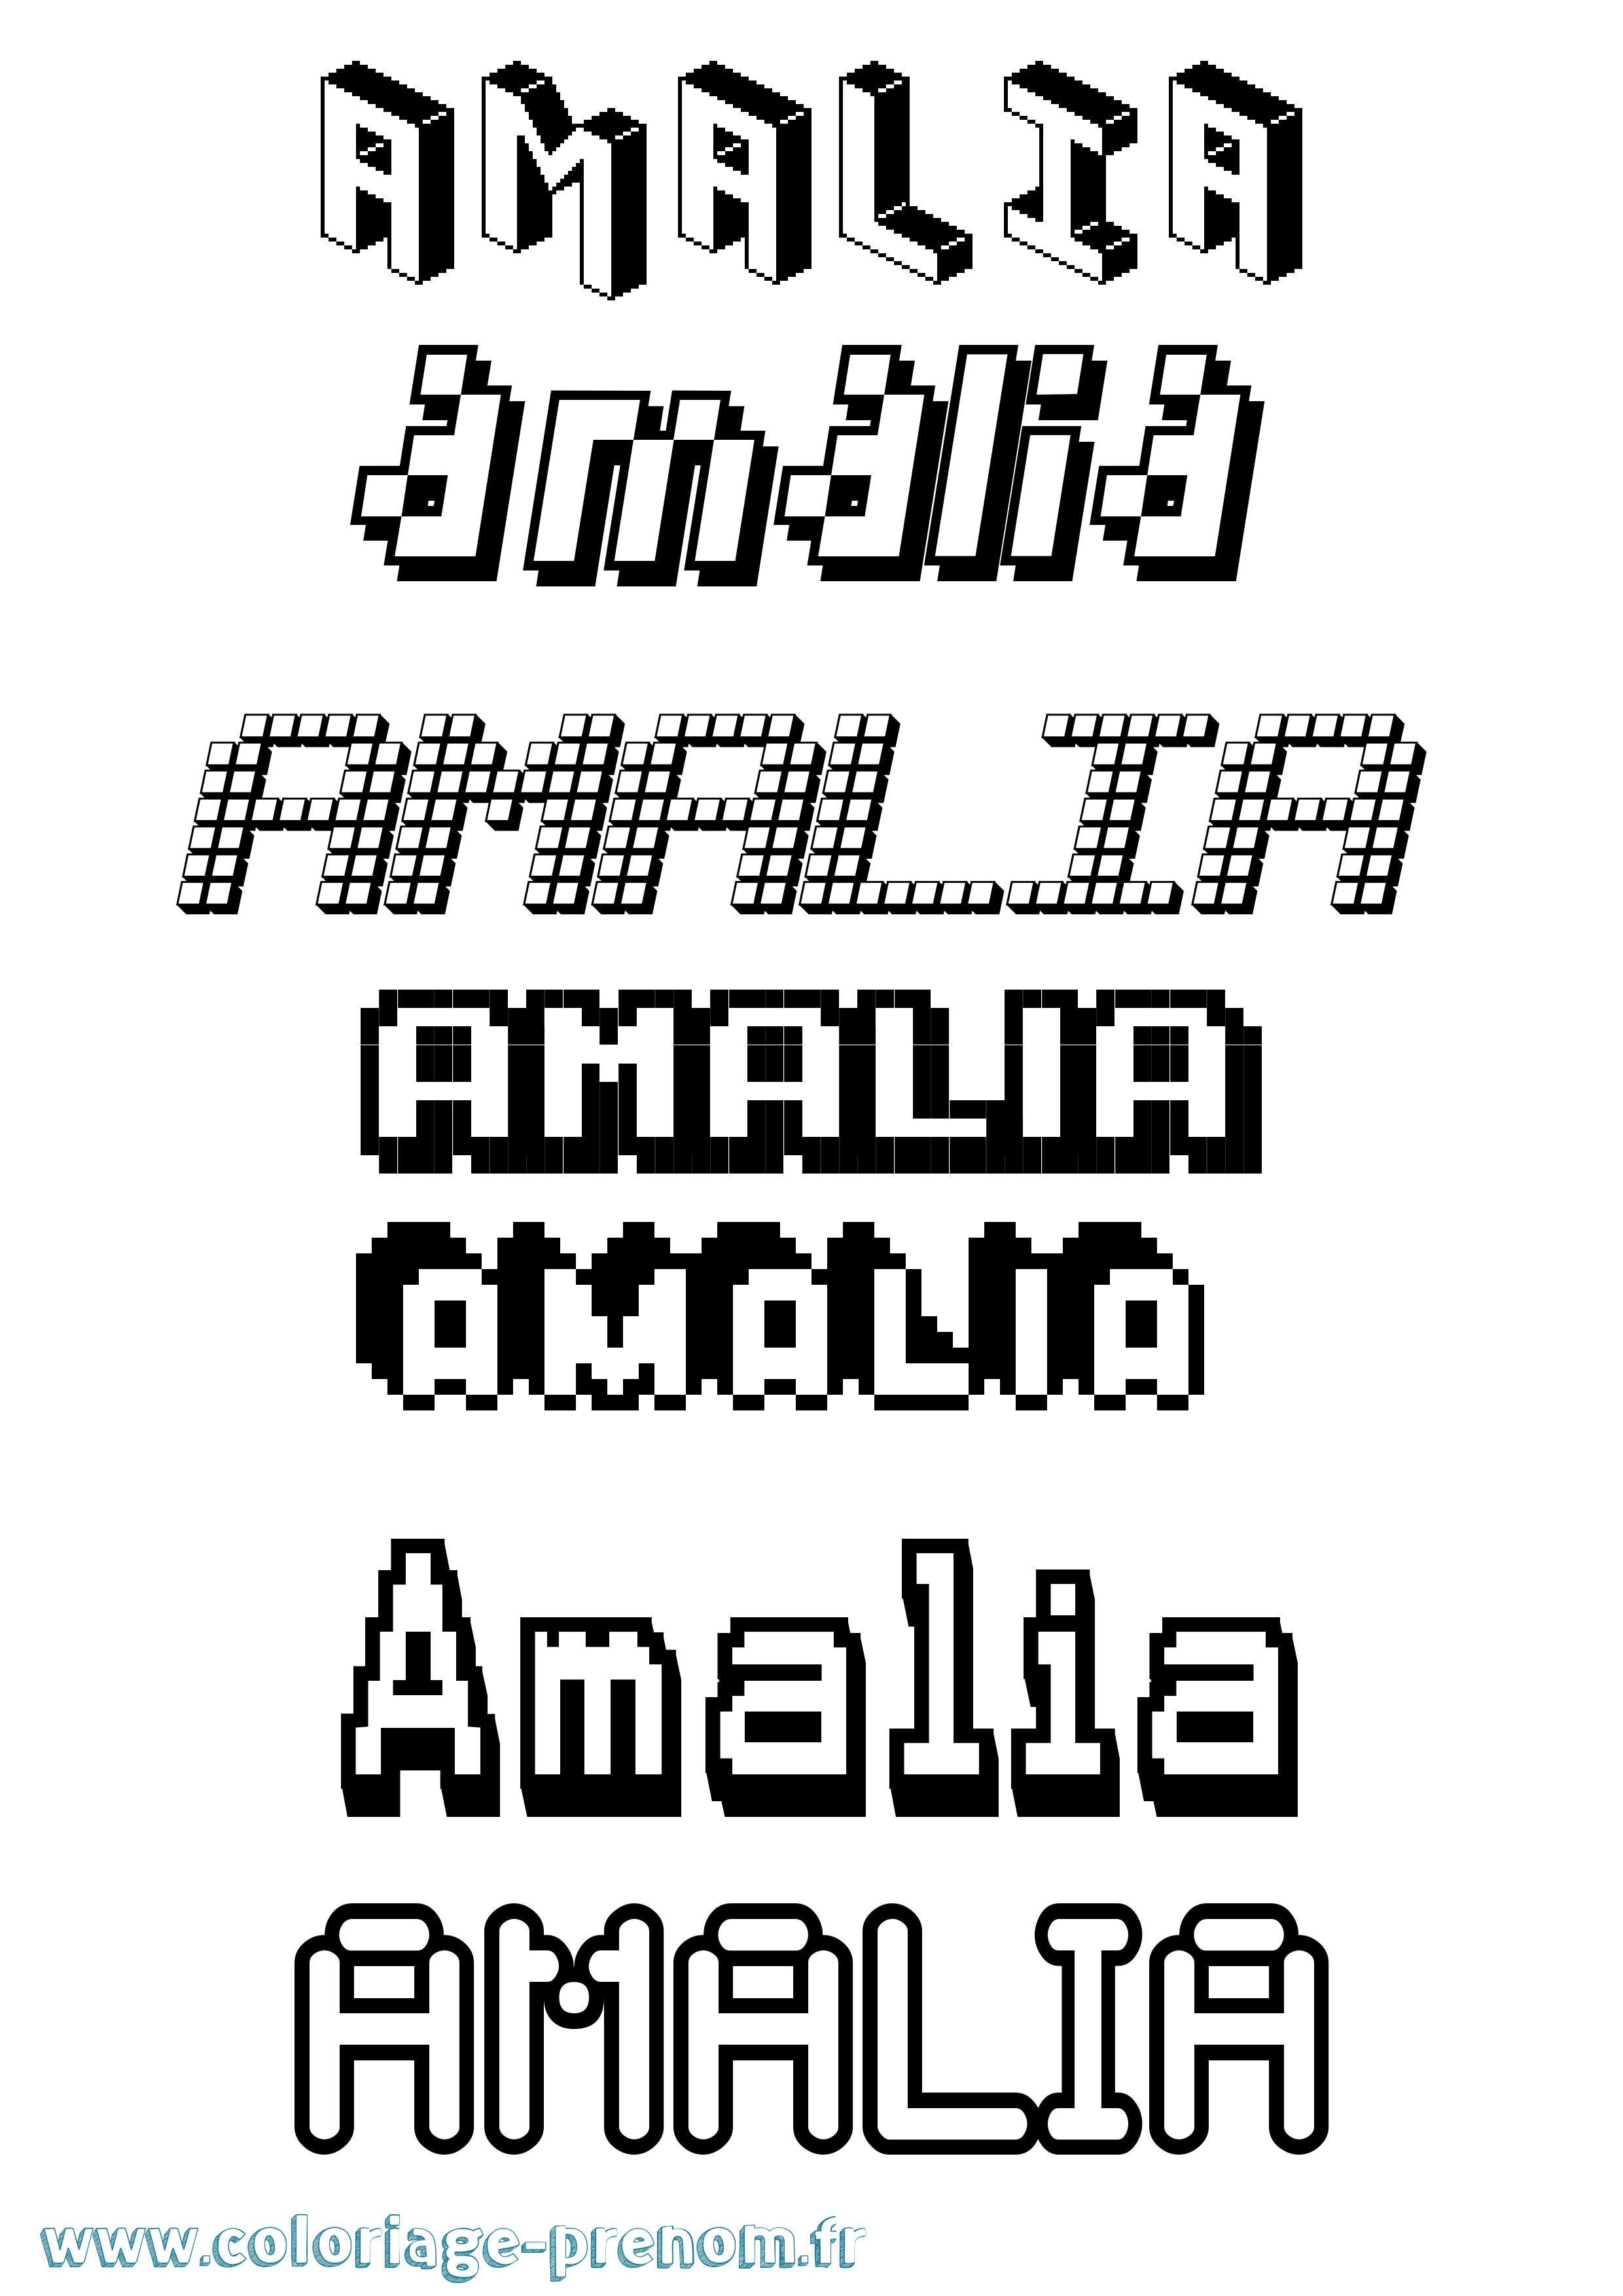 Coloriage prénom Amalia Pixel